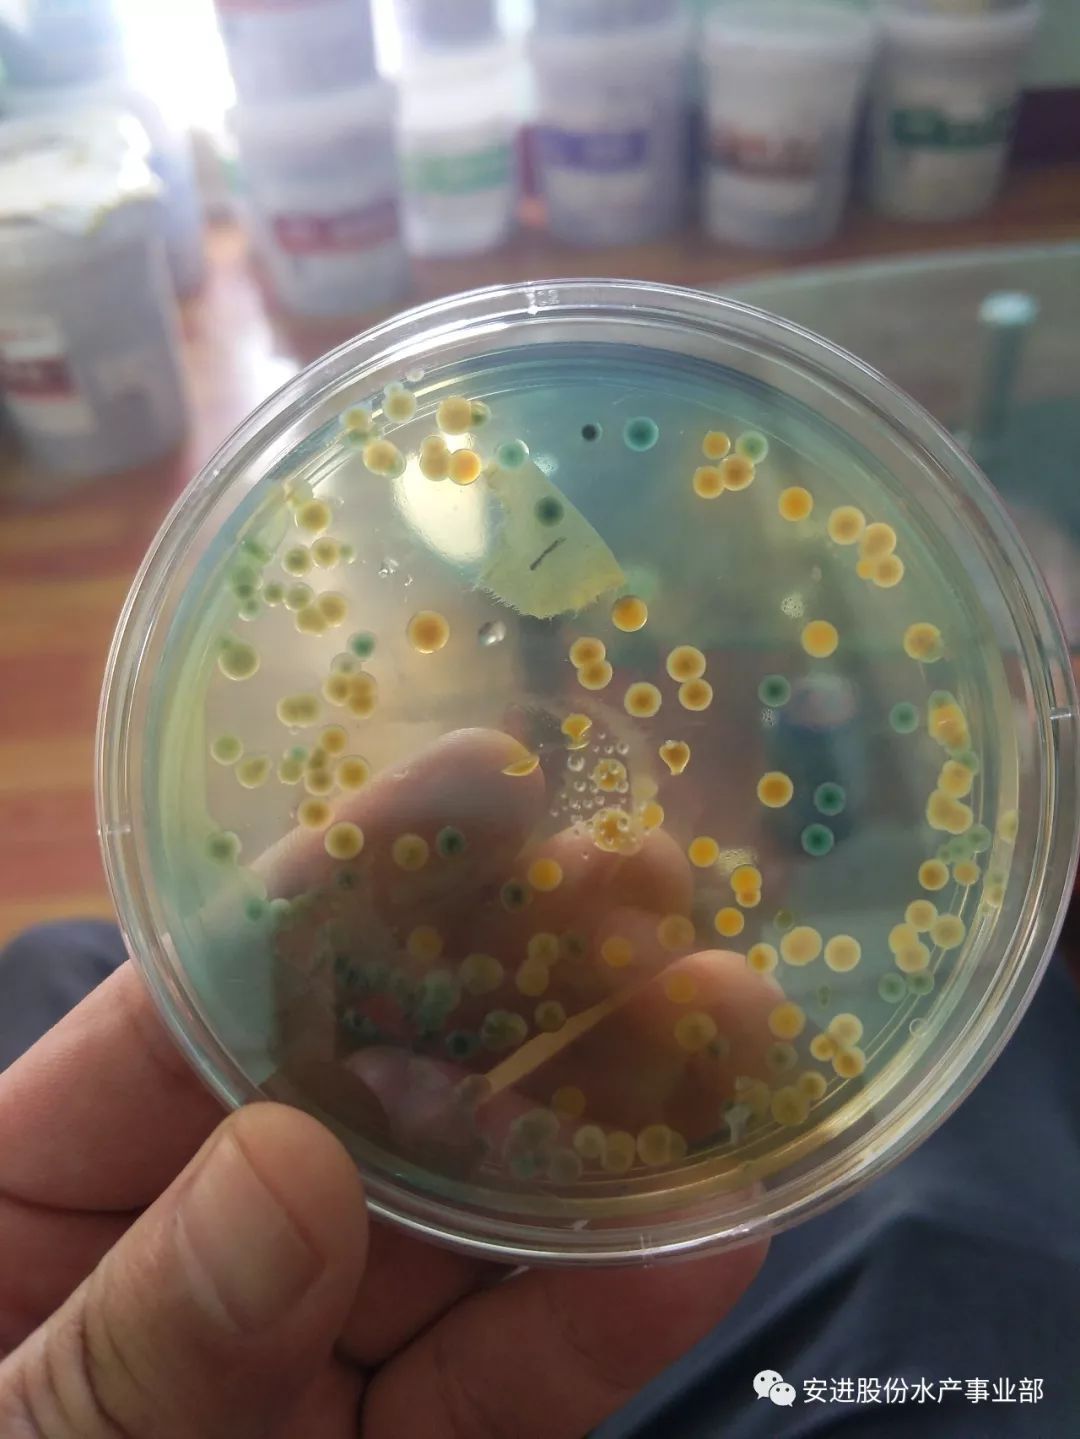 注意啦弧菌爆发不同弧菌引发的疾病不同应对措施你得知道